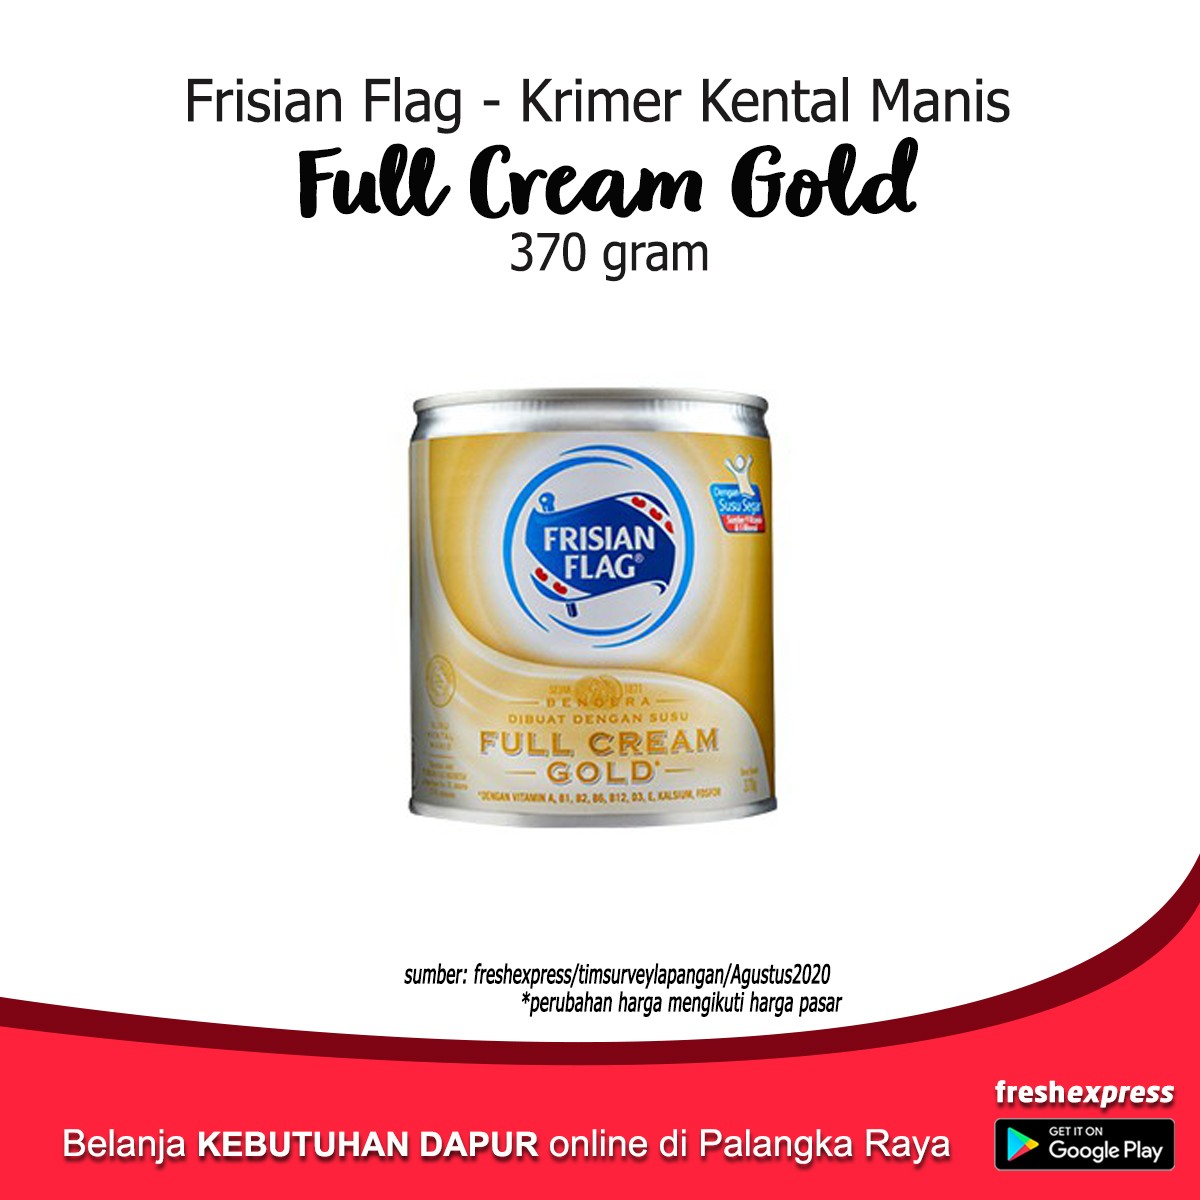 Frisian Flag Full Cream Gold 370 Gram